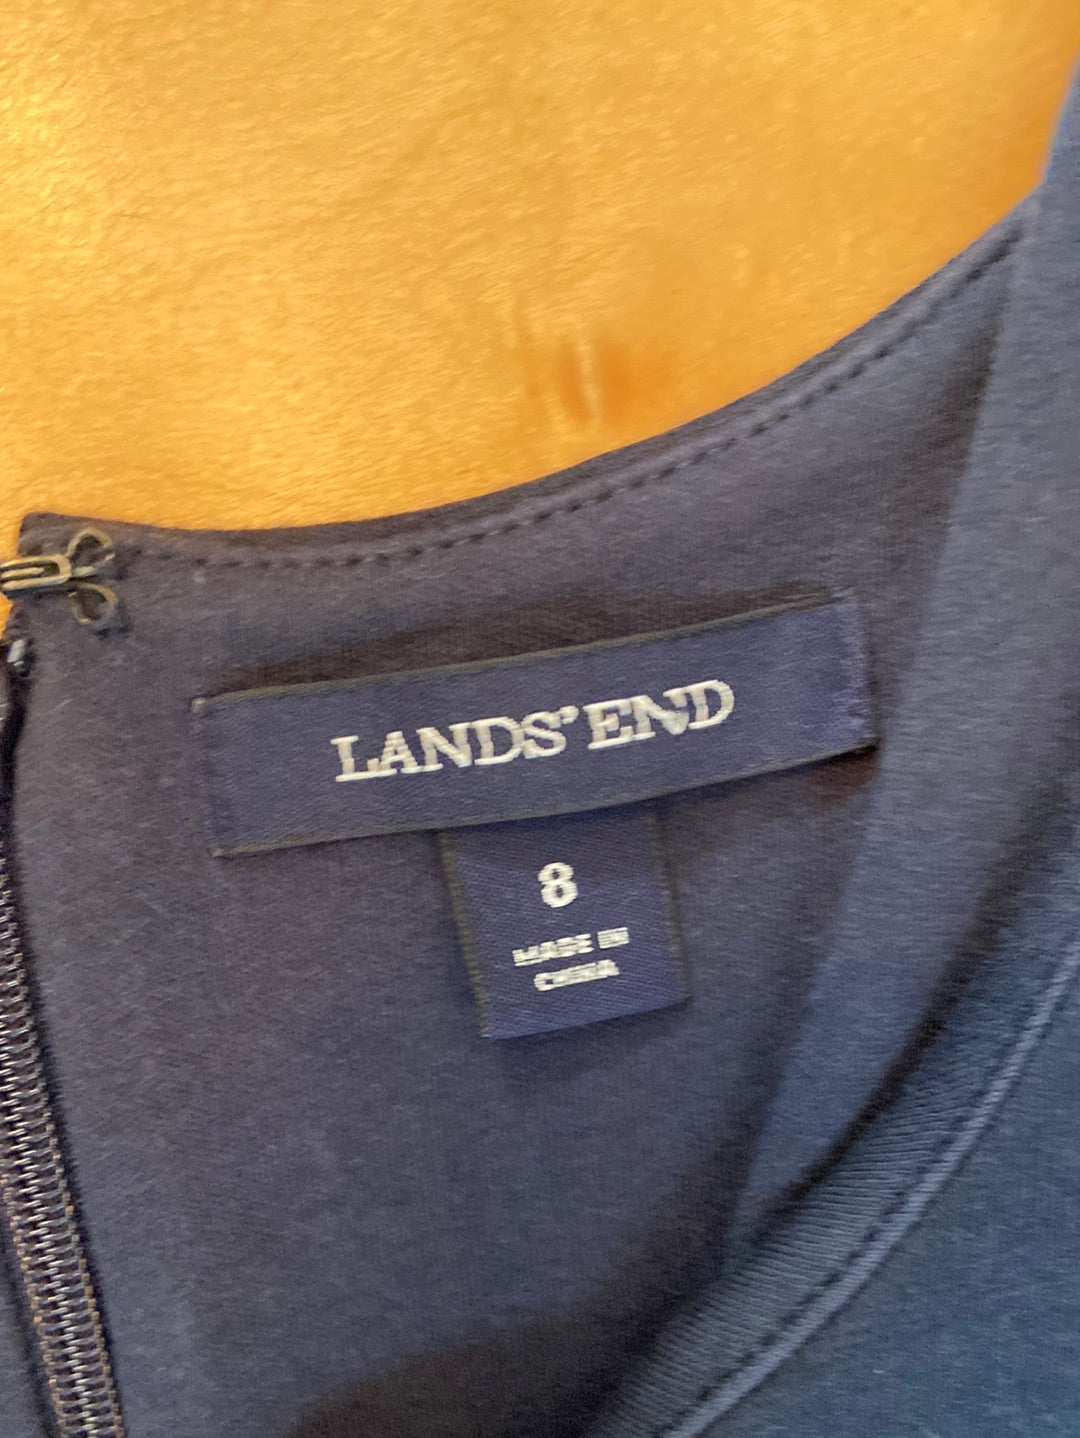 BASIC BLUE Lands End Size 8